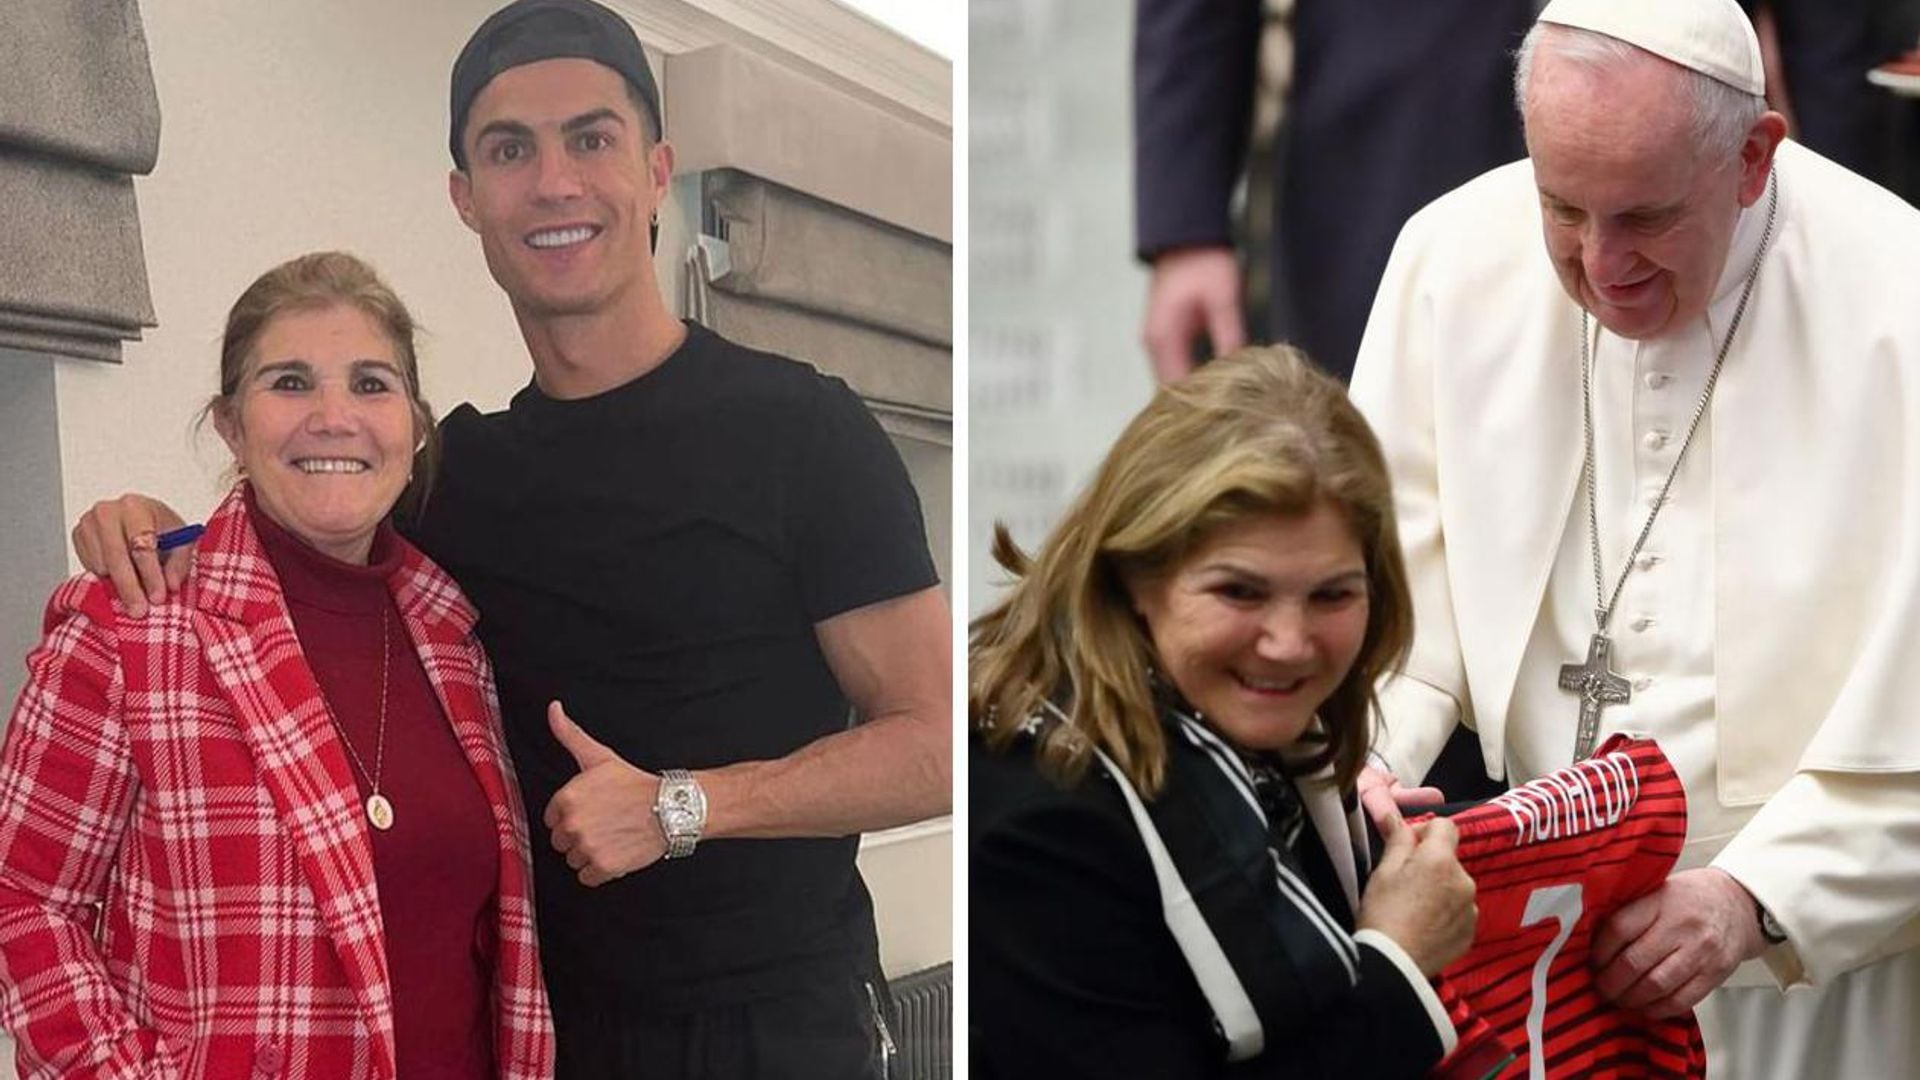 Mamá de Cristiano Ronaldo le obsequia un jersey al Papa Fancisco, y así reaccionó él